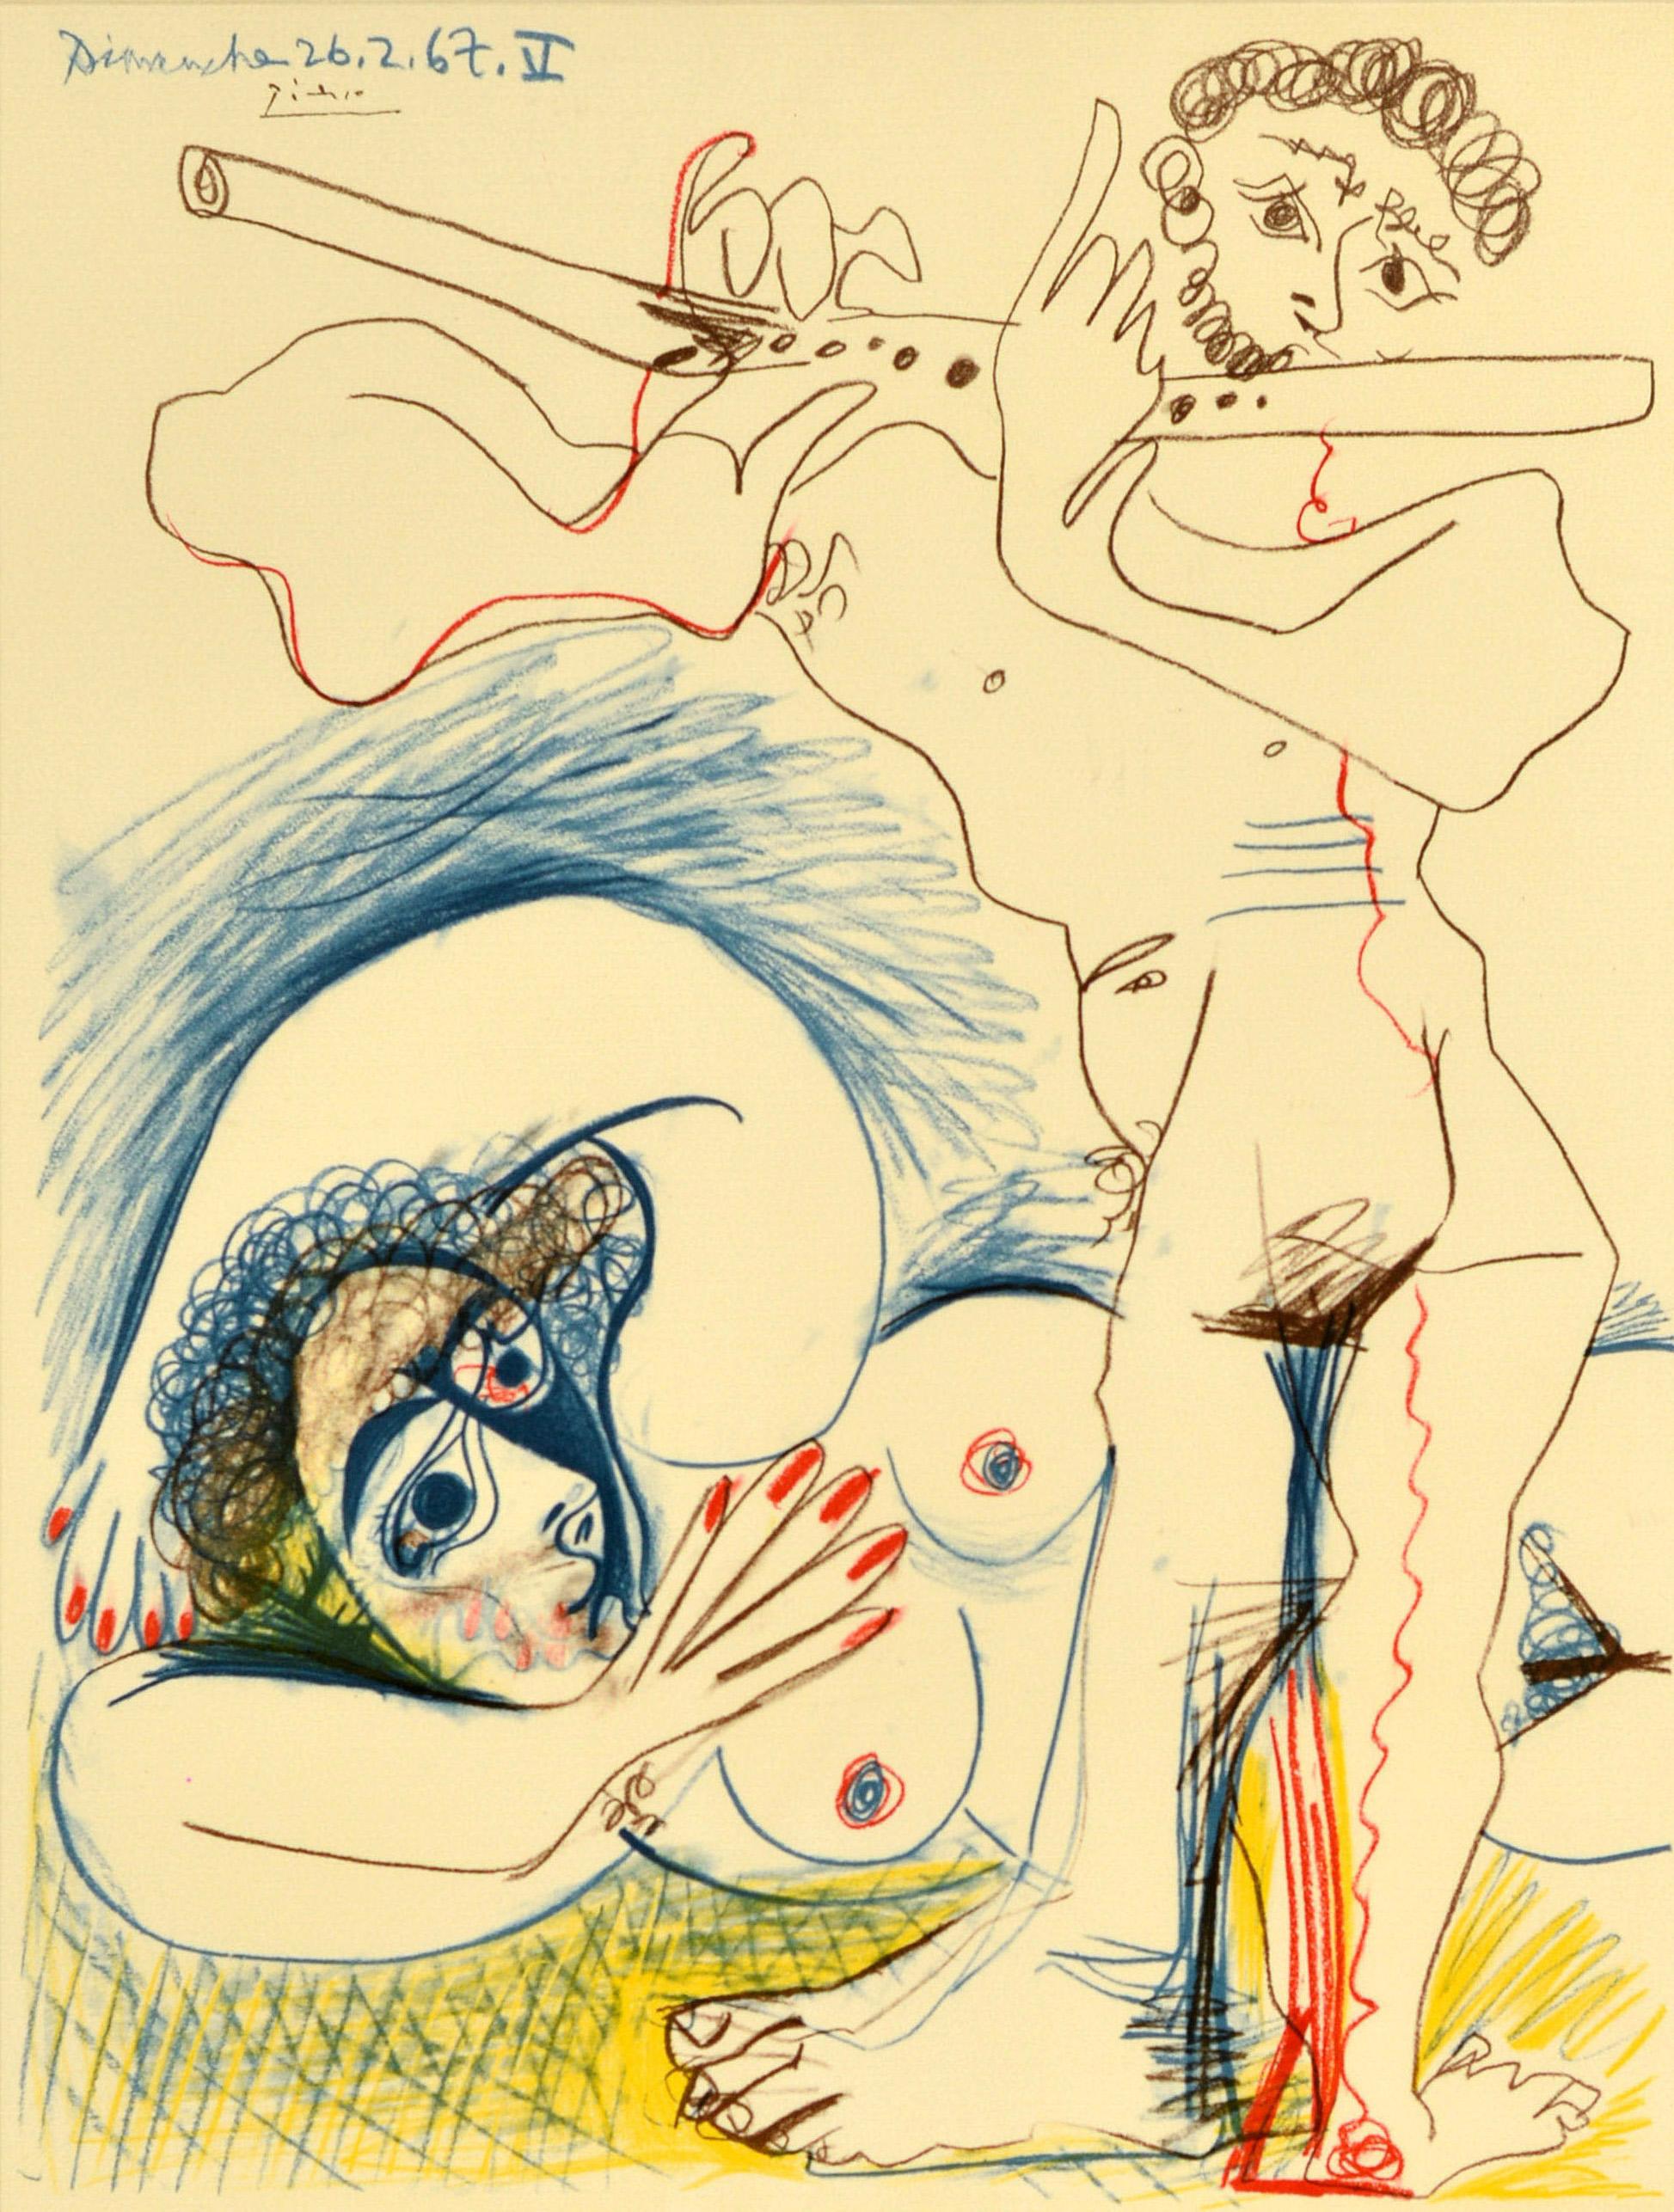 Original Vintage-Ausstellungsplakat für Picasso Dessins 1966-1967 Drawings in der Galerie Louise Leiris 47 Rue de Monceau Paris VIII vom 28. Februar bis 23. März 1968 mit abstrakten Kunstwerken des bedeutenden spanischen Künstlers und Bildhauers